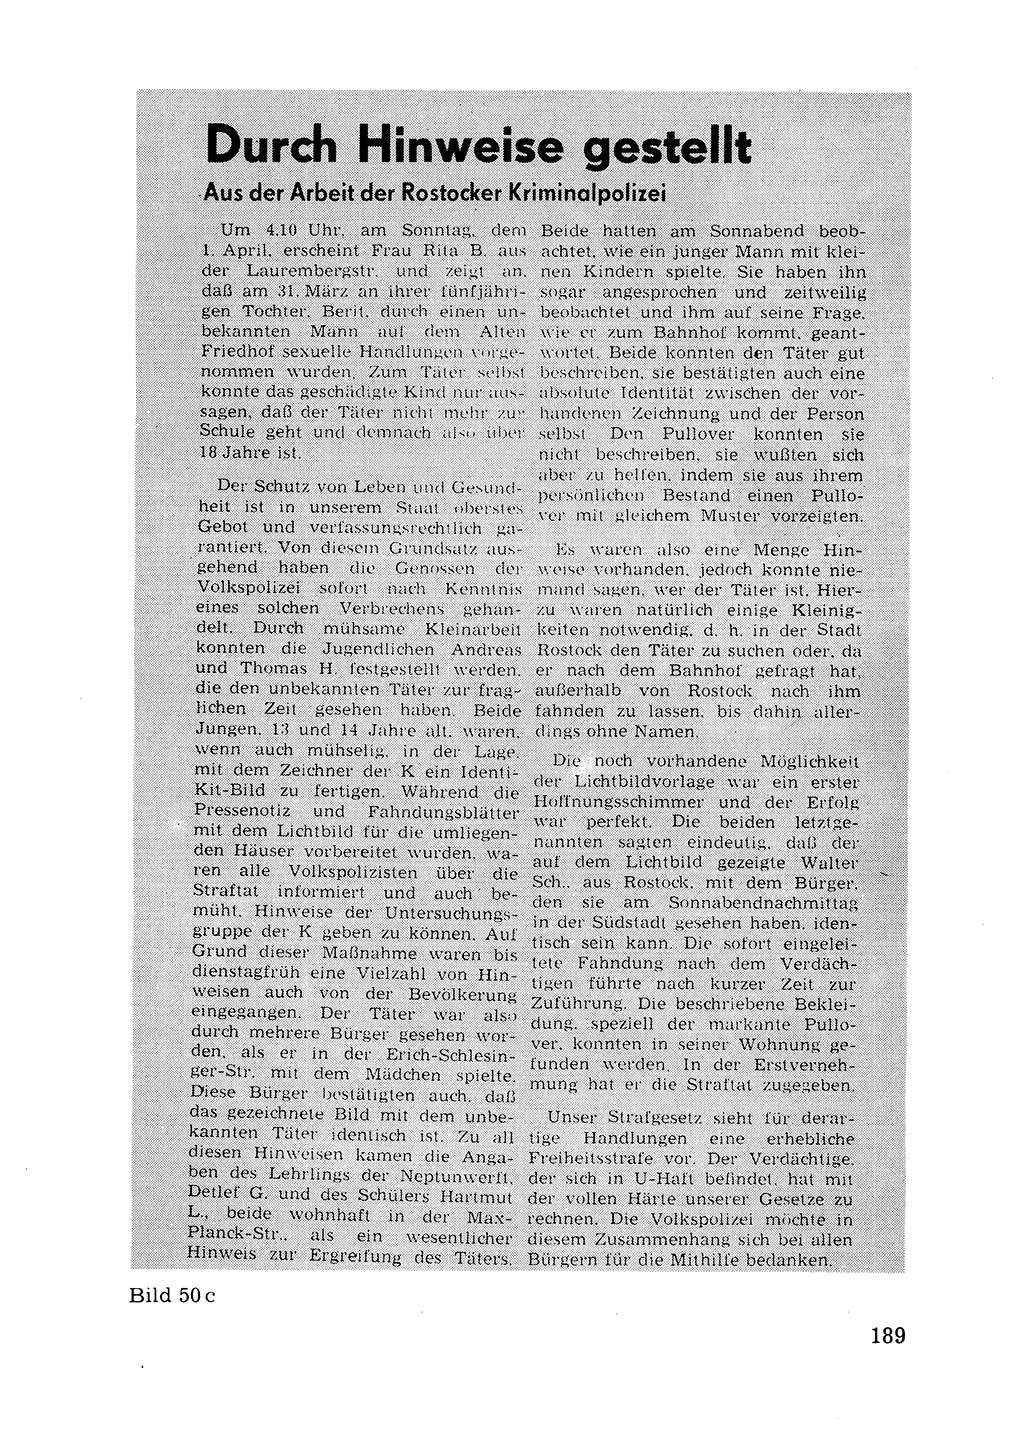 Das subjektive Porträt [Deutsche Demokratische Republik (DDR)] 1981, Seite 189 (Subj. Port. DDR 1981, S. 189)